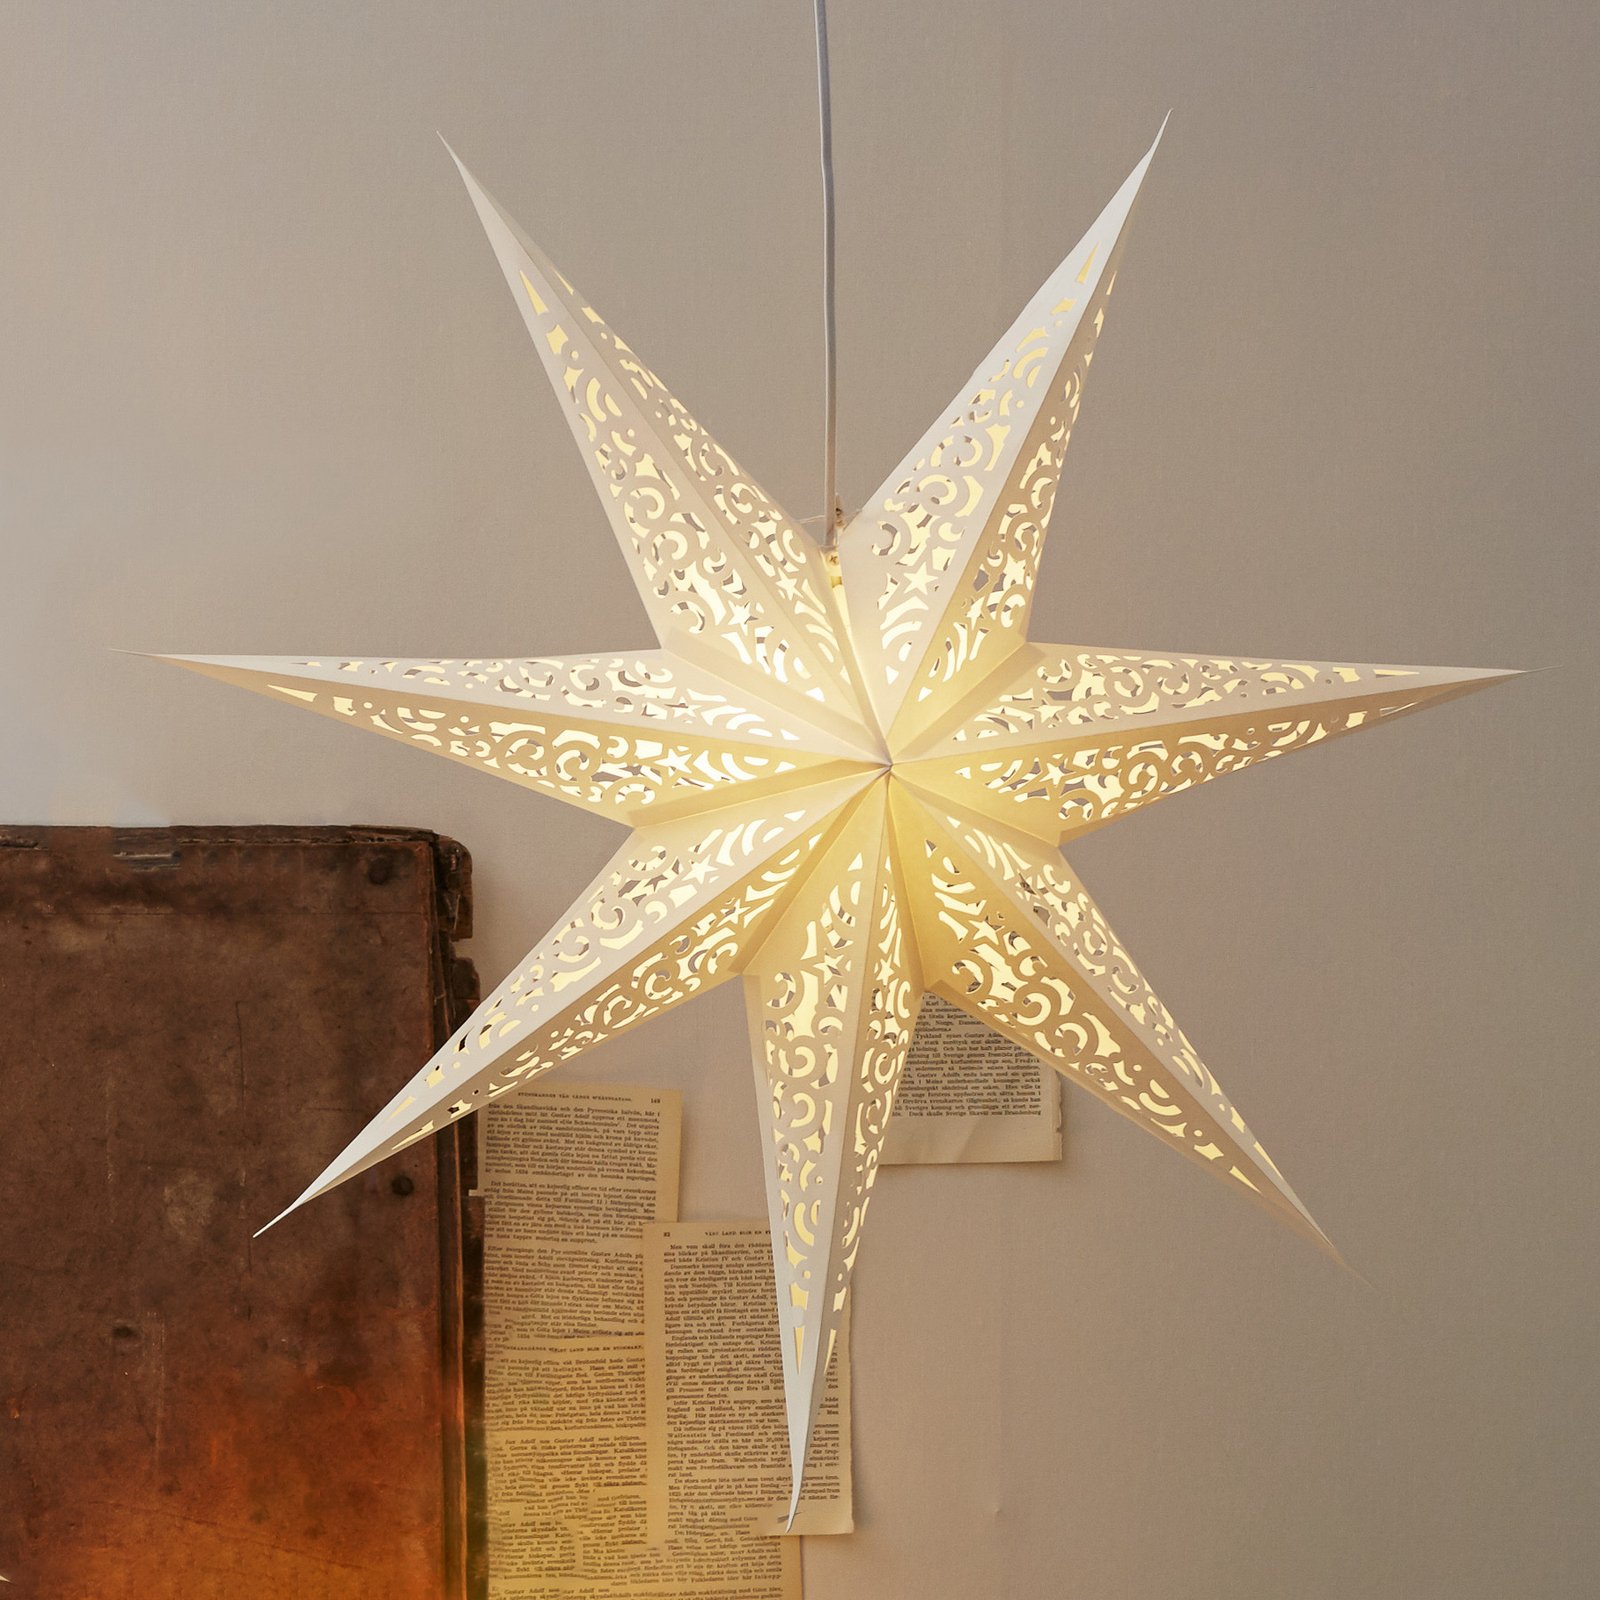 Papírová hvězda Lace bez osvětlení, Ø 80 cm, bílá